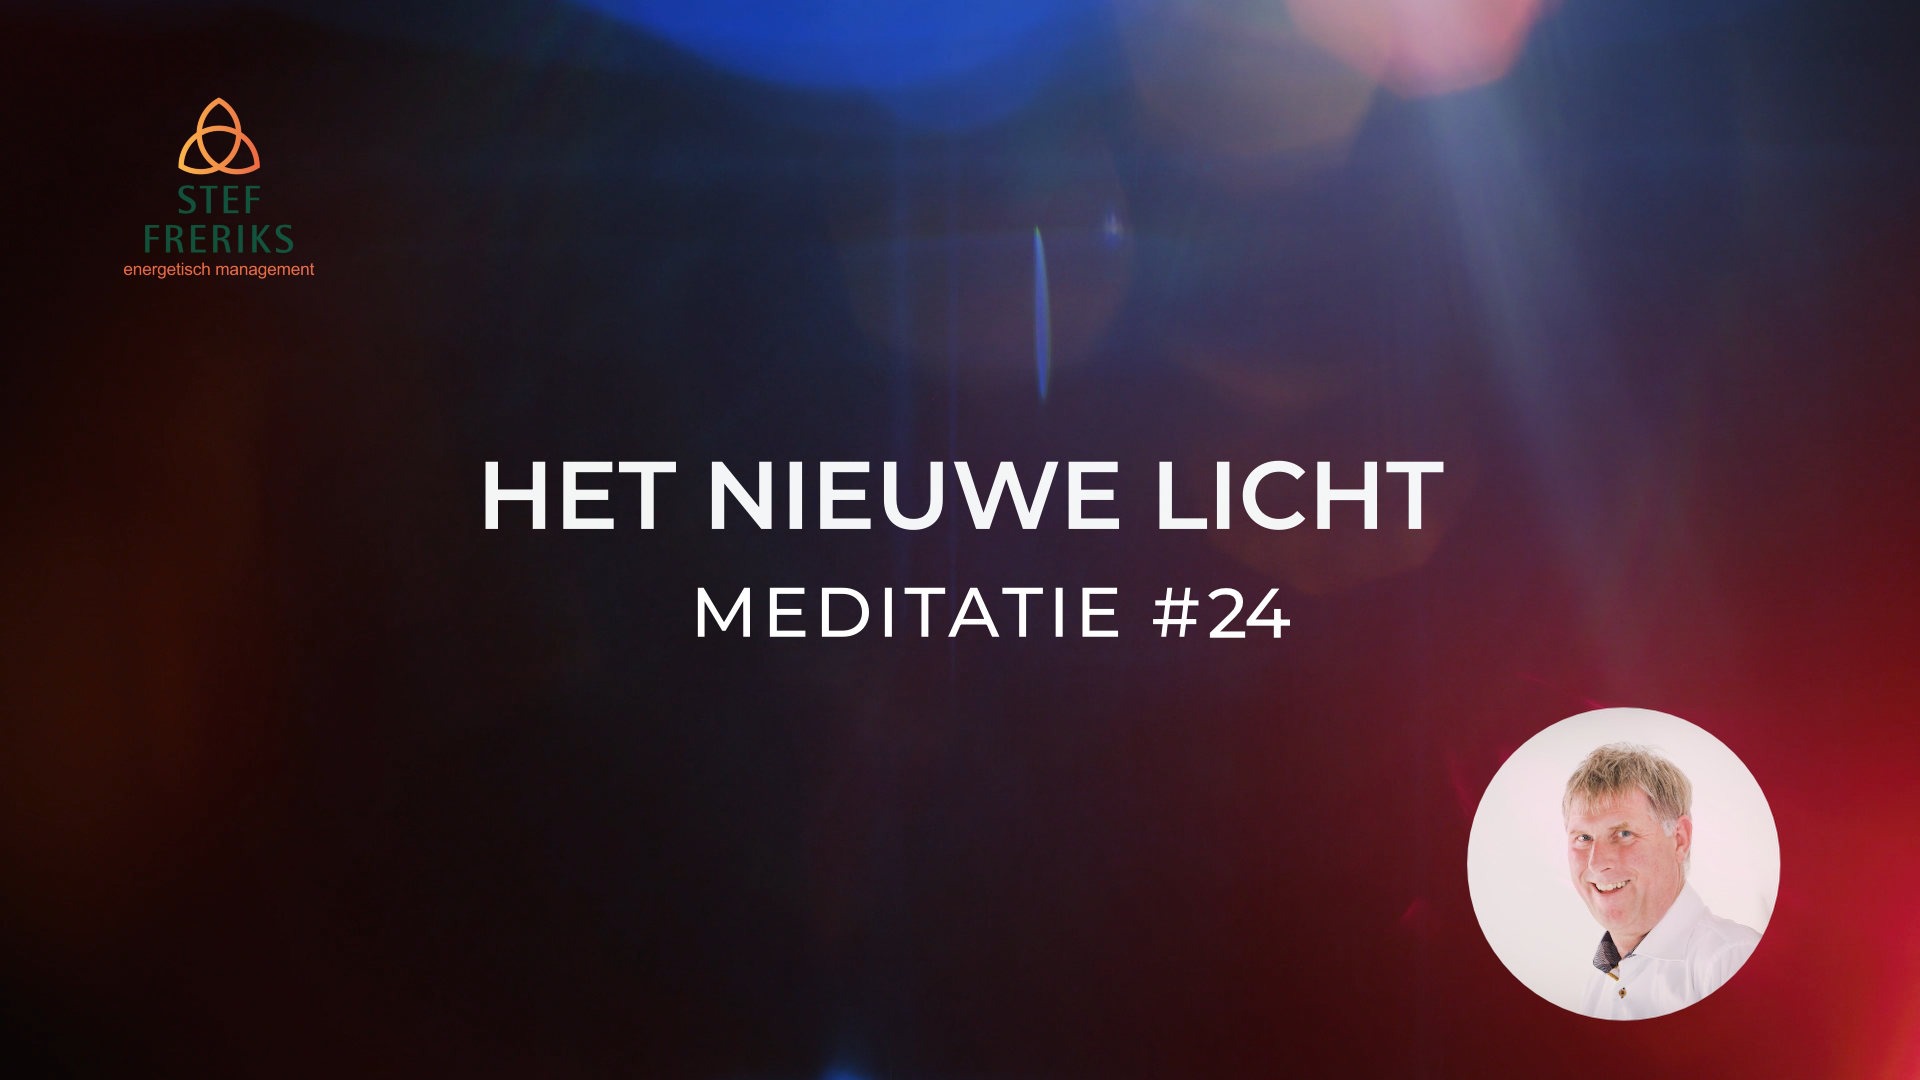 Meditatie #24 uit de serie Het Nieuwe Licht: Samengaan